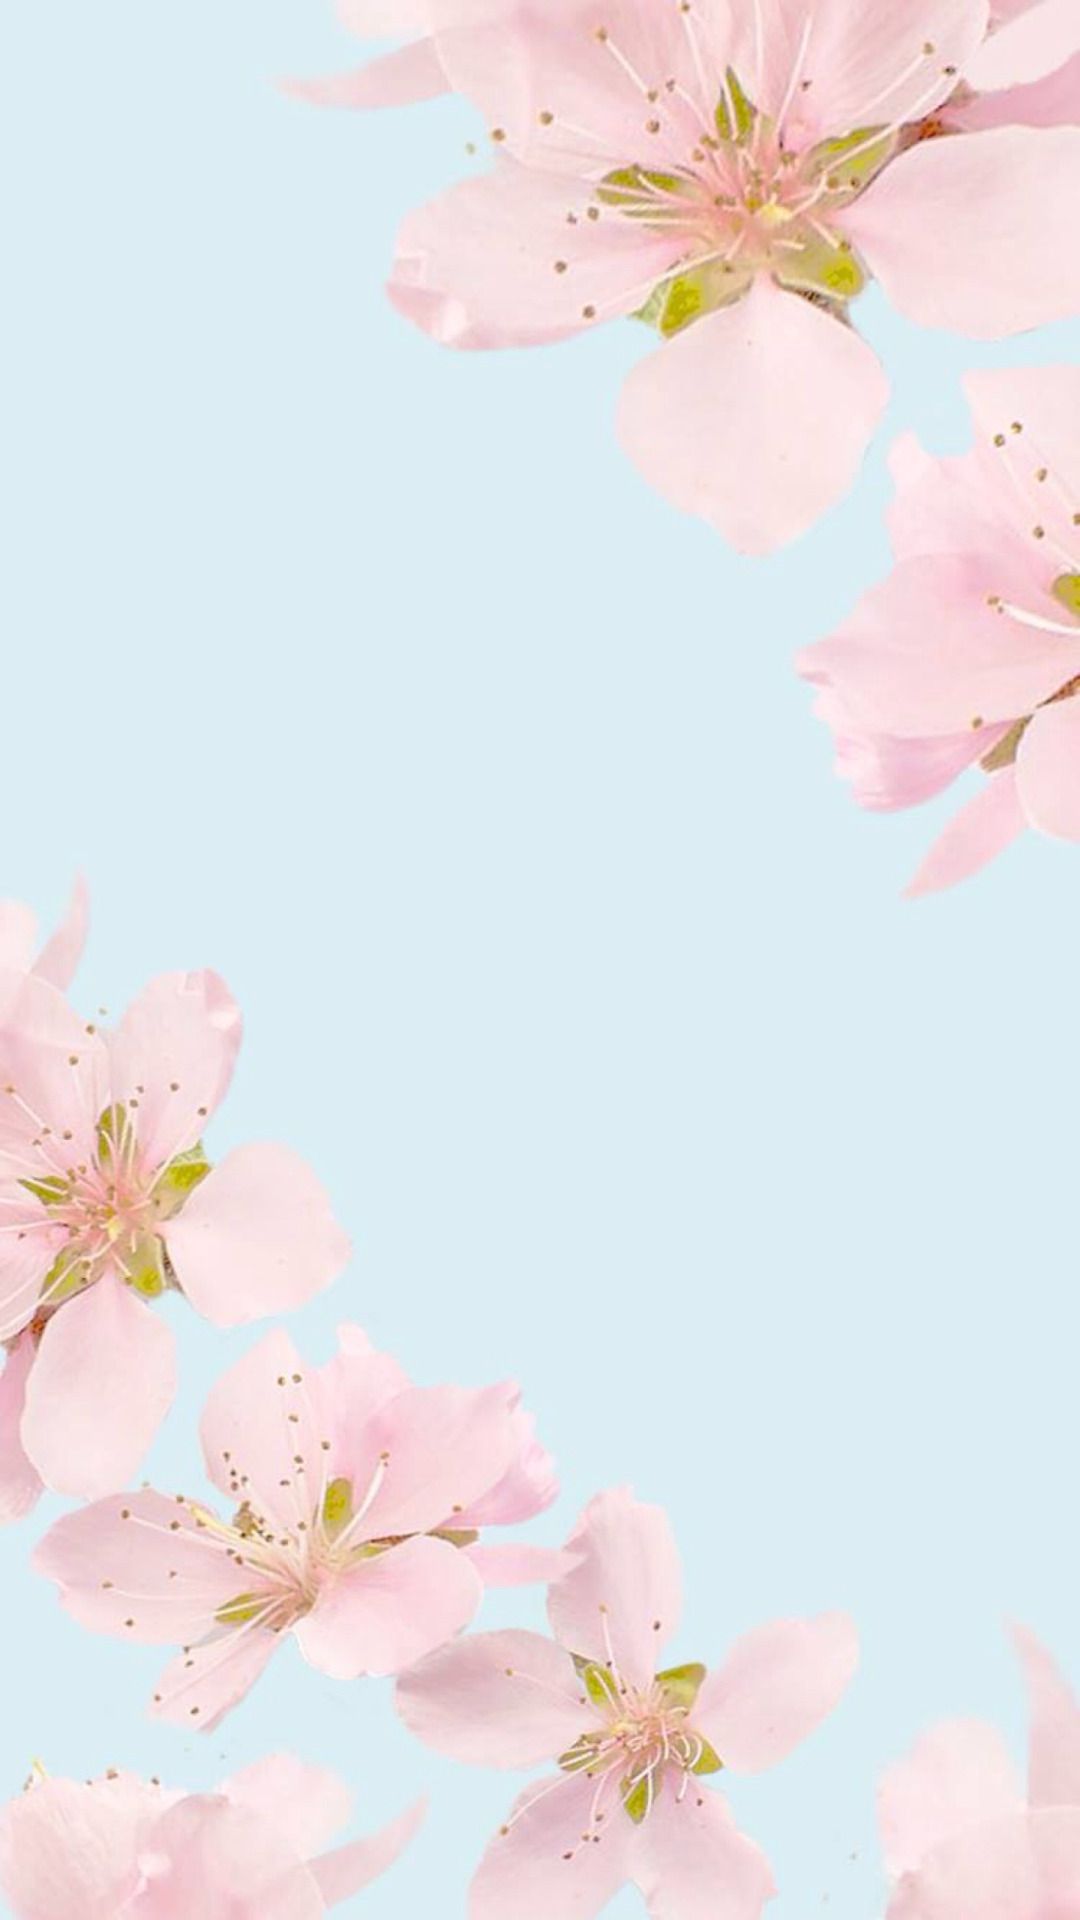 hübsche tapeten tumblr,rosa,blühen,blume,kirschblüte,blütenblatt